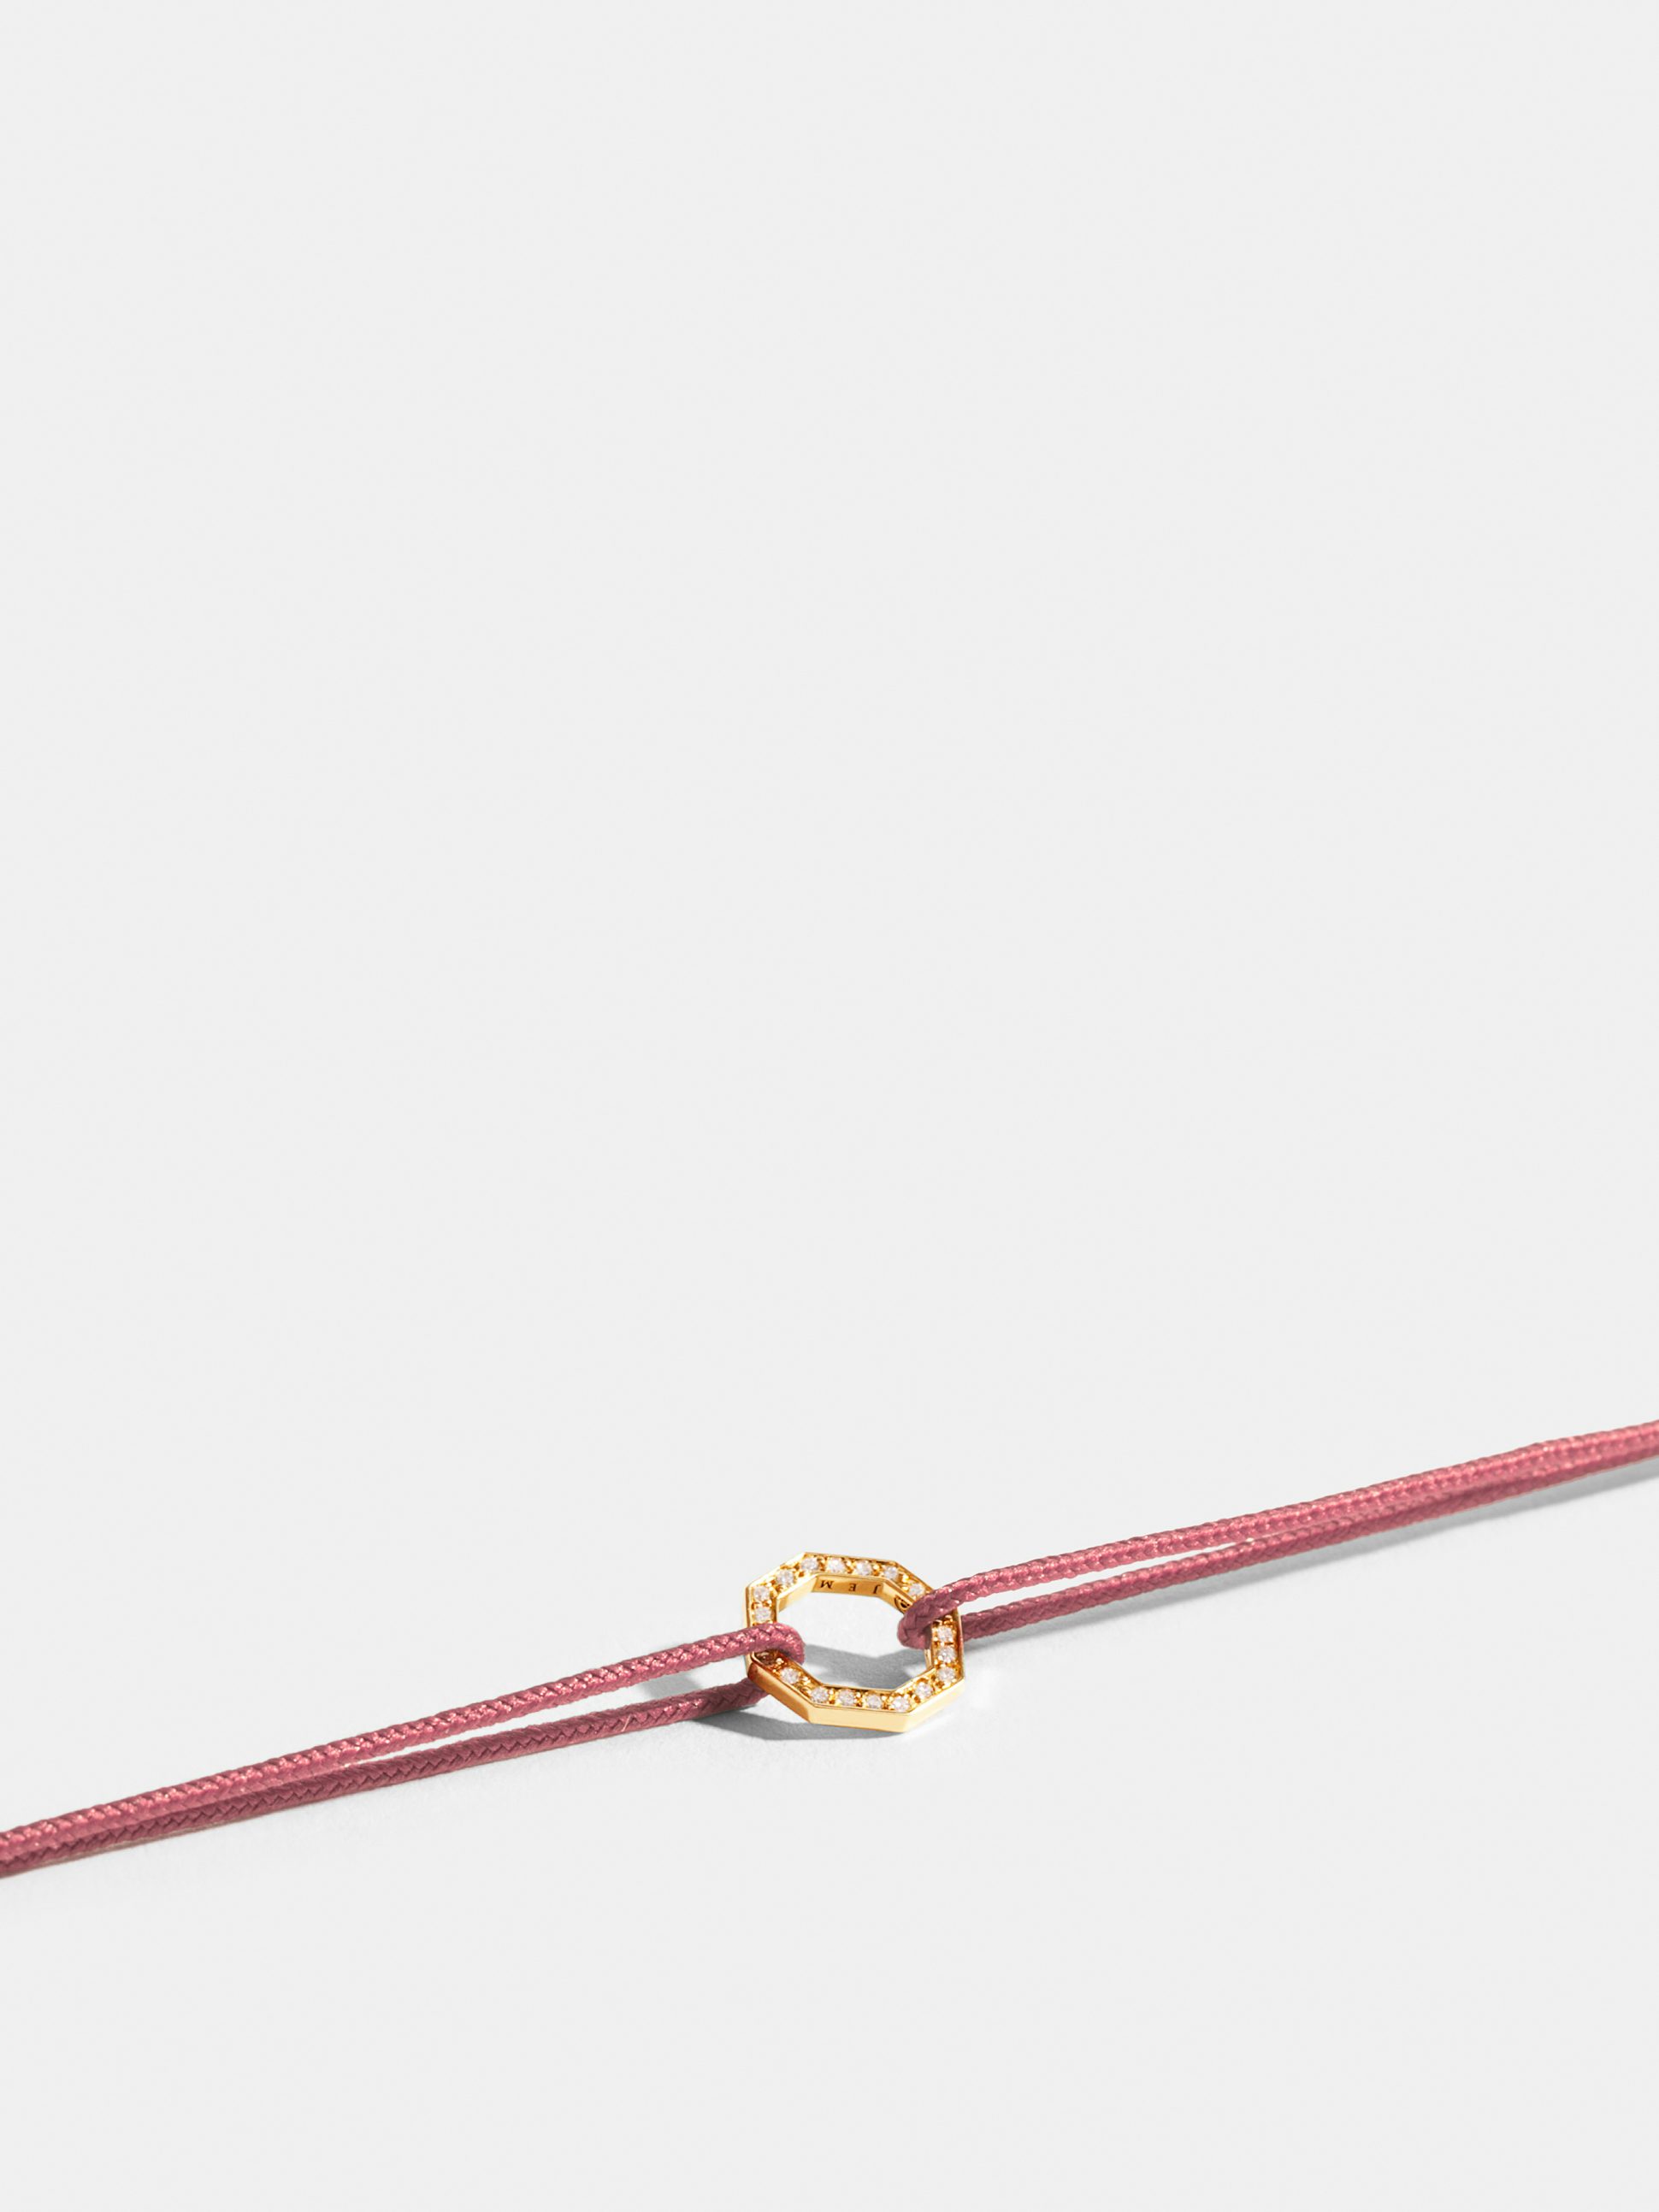 Motif Octogone en Or jaune éthique 18 carats certifié Fairmined et pavé de diamants de synthèse, sur cordon vieux rose. 